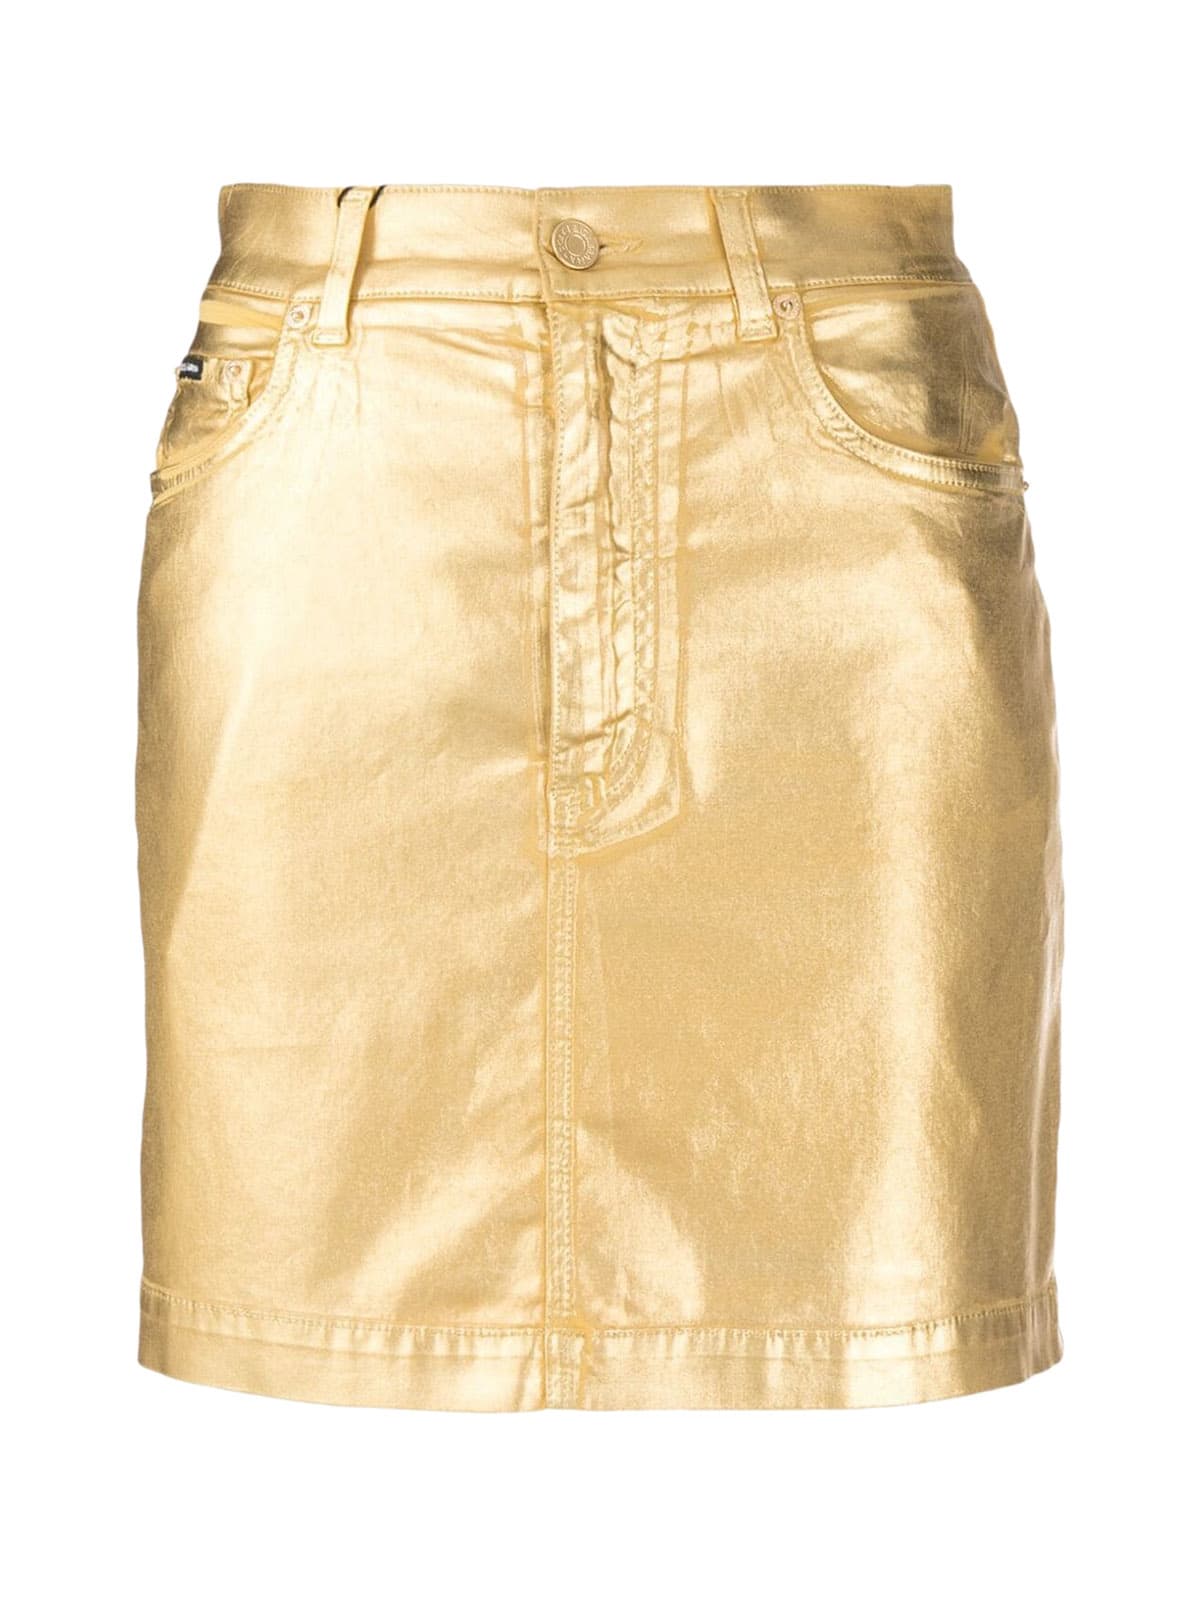 Dolce & Gabbana 5pockets Skirt